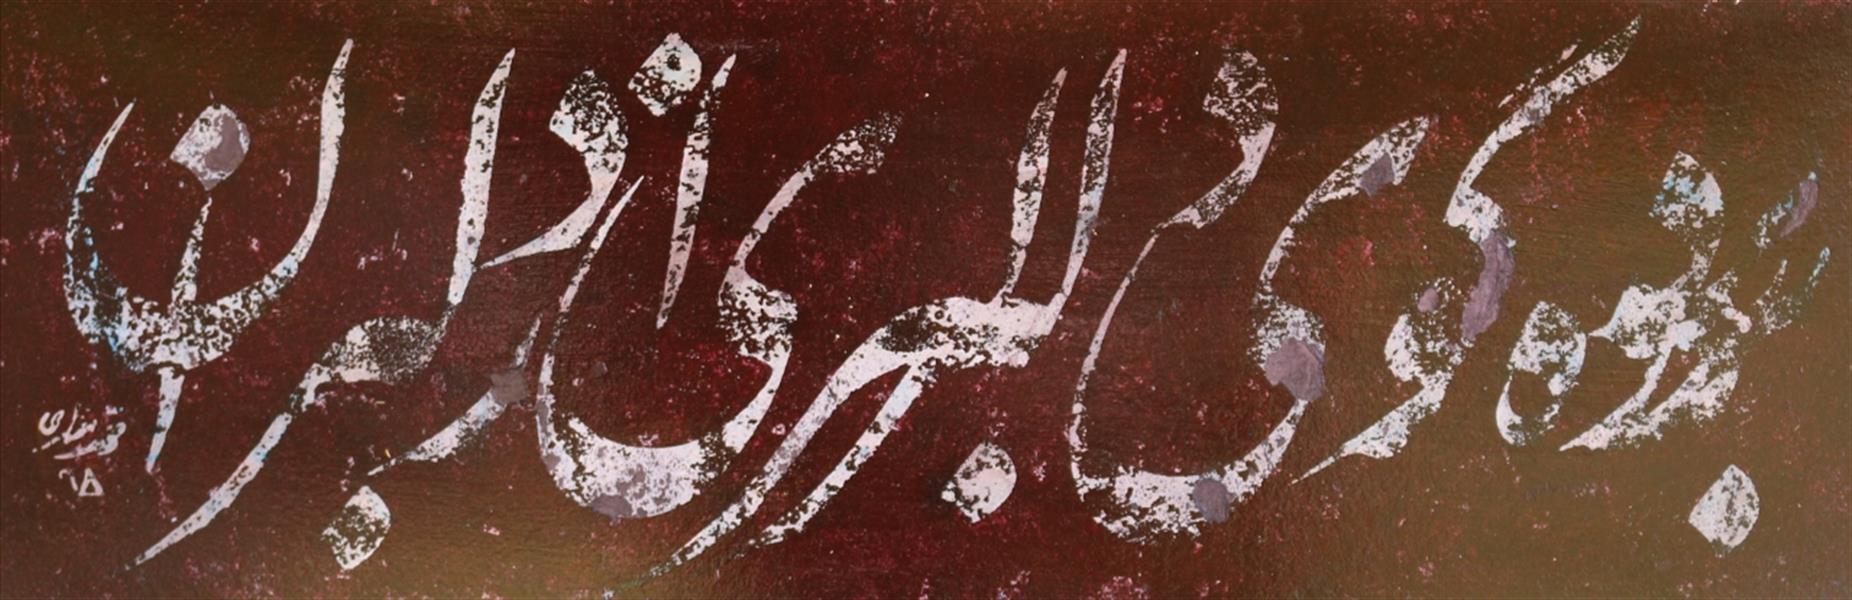 هنر خوشنویسی محفل خوشنویسی محمد مظهری برده گوی دلبری از دلبران
ابعاد پاسپارتو و قاب ۴۵×۸۵
(قلم ۲.۵ سانتی)
اکریلیک روی مقوا، پرس شده روی پلکسی